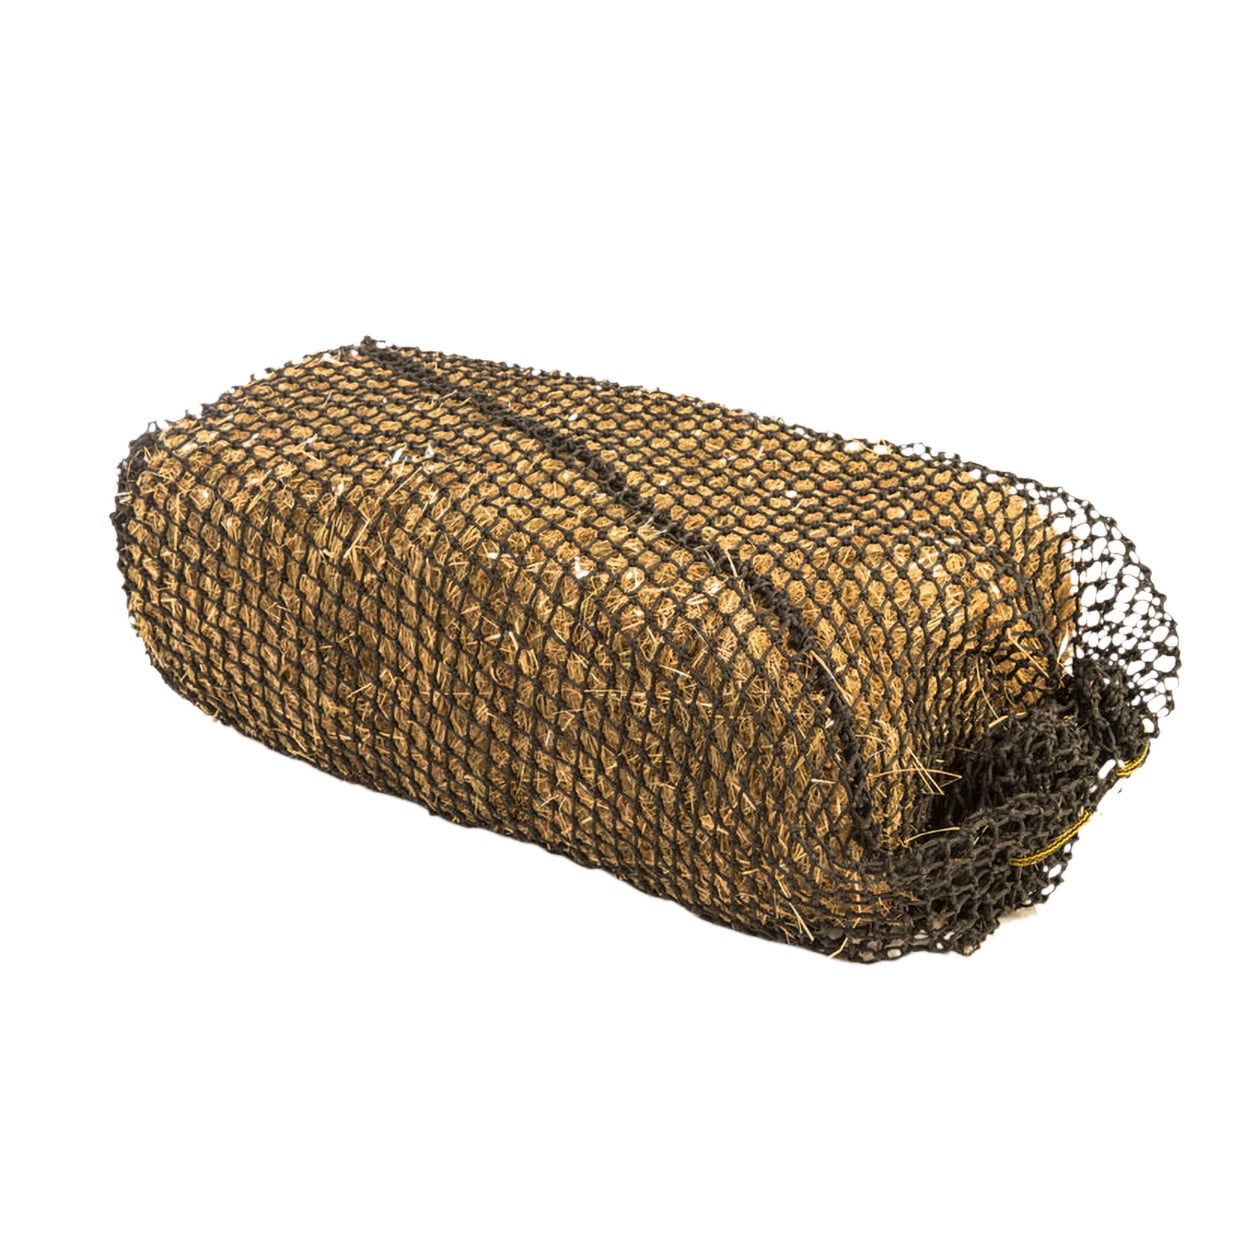 Trickle Net ORIGNIAL Field/Stable Bale Super Strong Slow Feeding Hay Net 